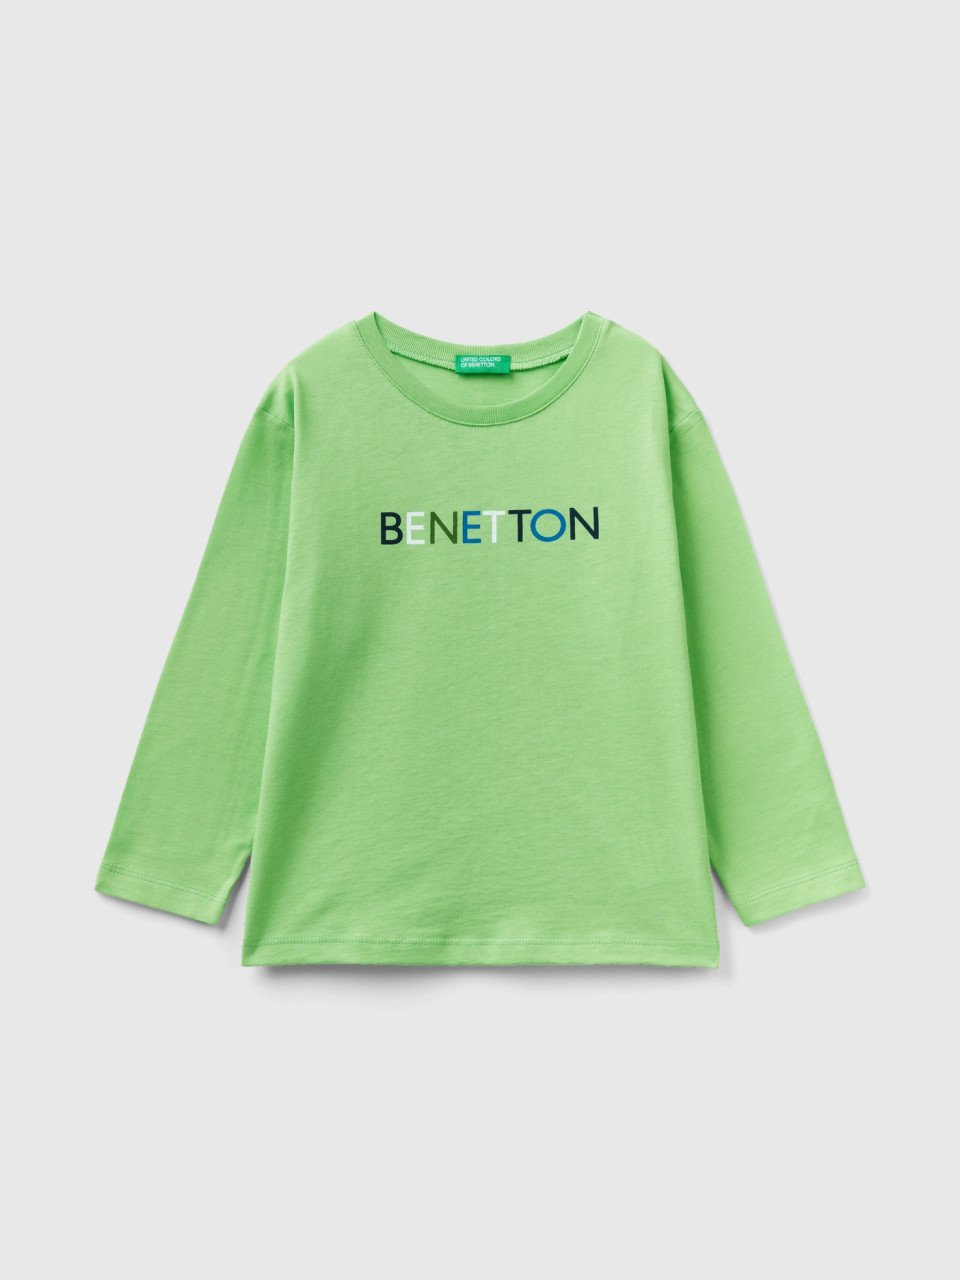 Benetton, Long Sleeve Organic Cotton T-shirt, Light Green, Kids